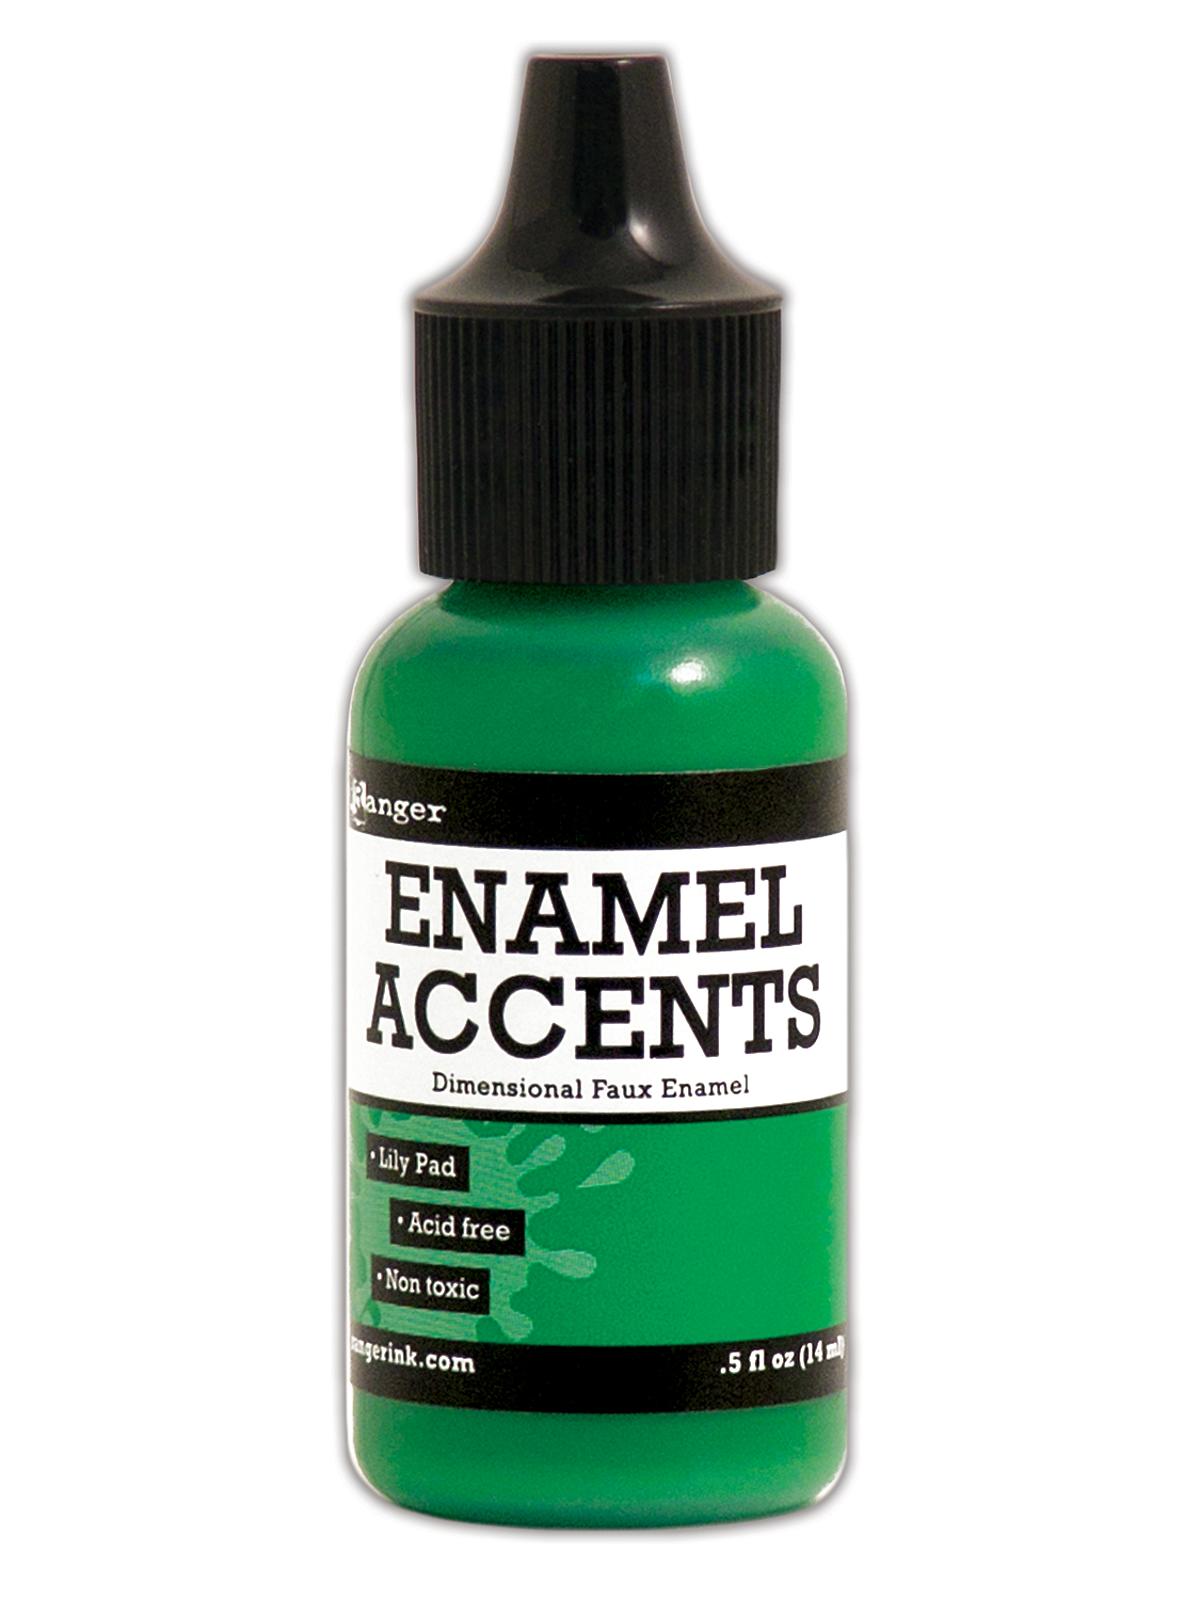 Enamel Accents Lily Pad 1 2 Oz. Bottle